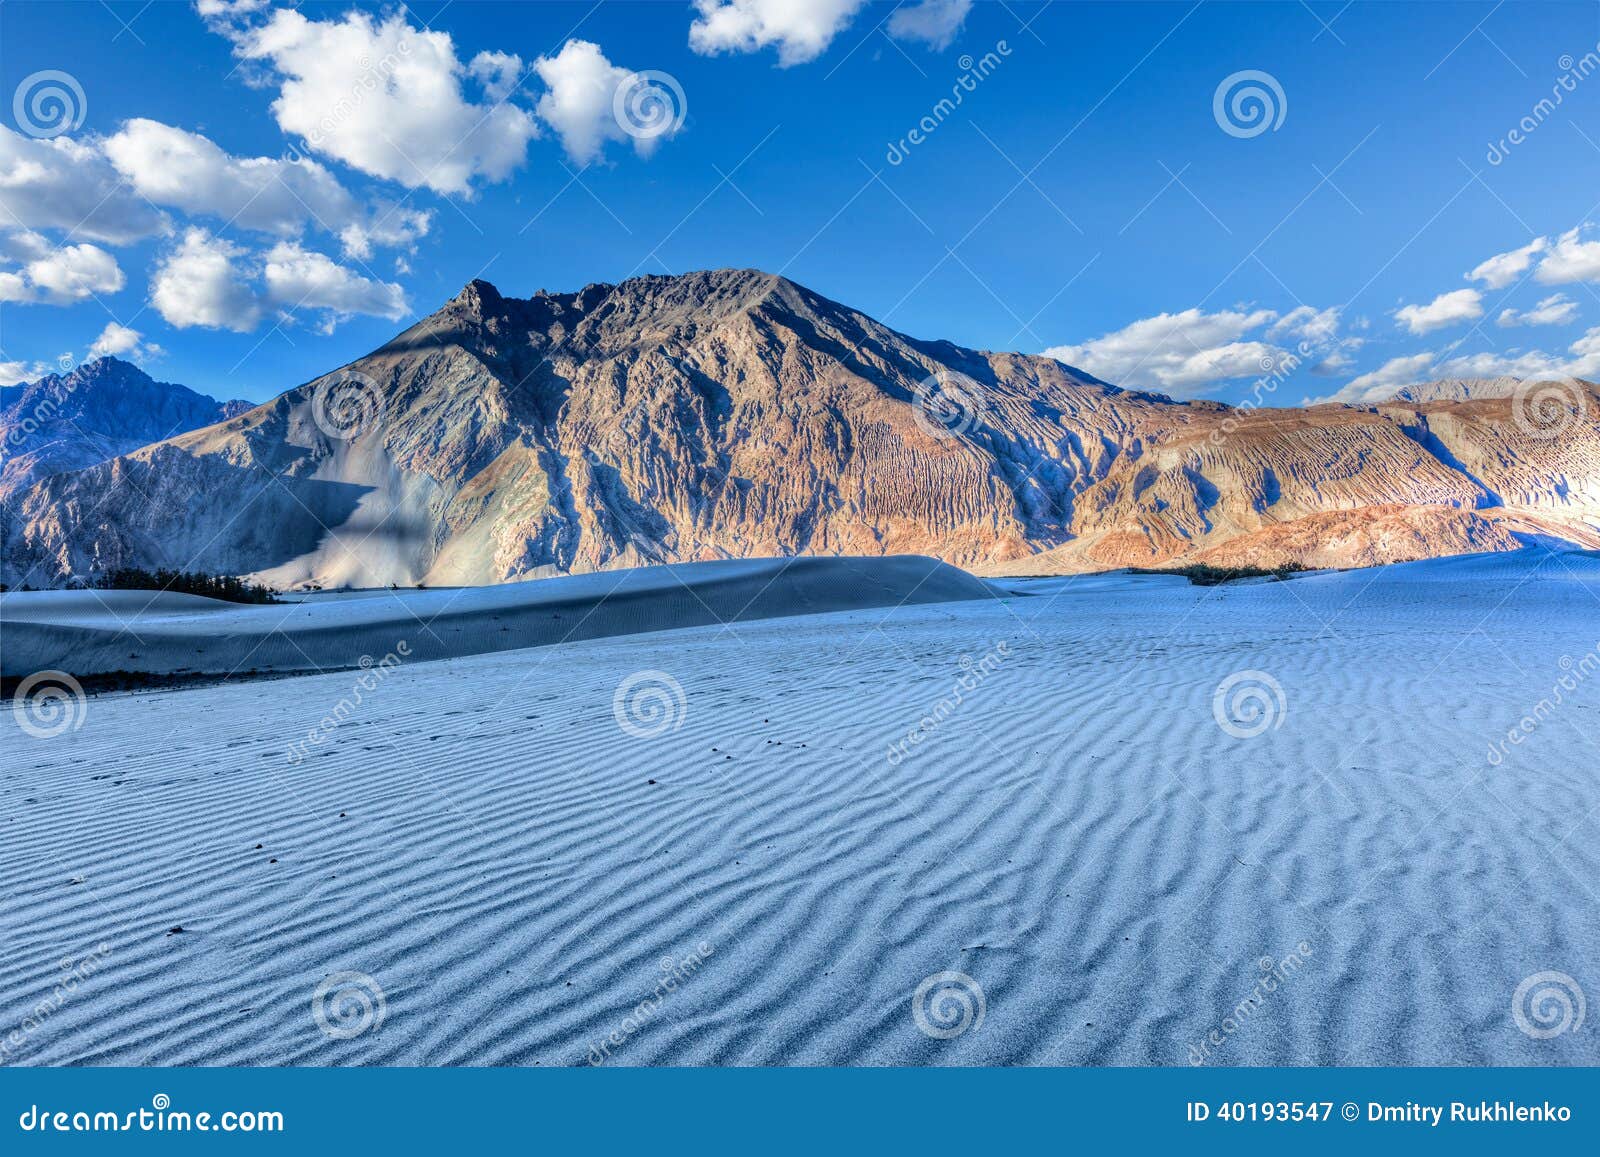 dunes in nubra valley, ladakh, india